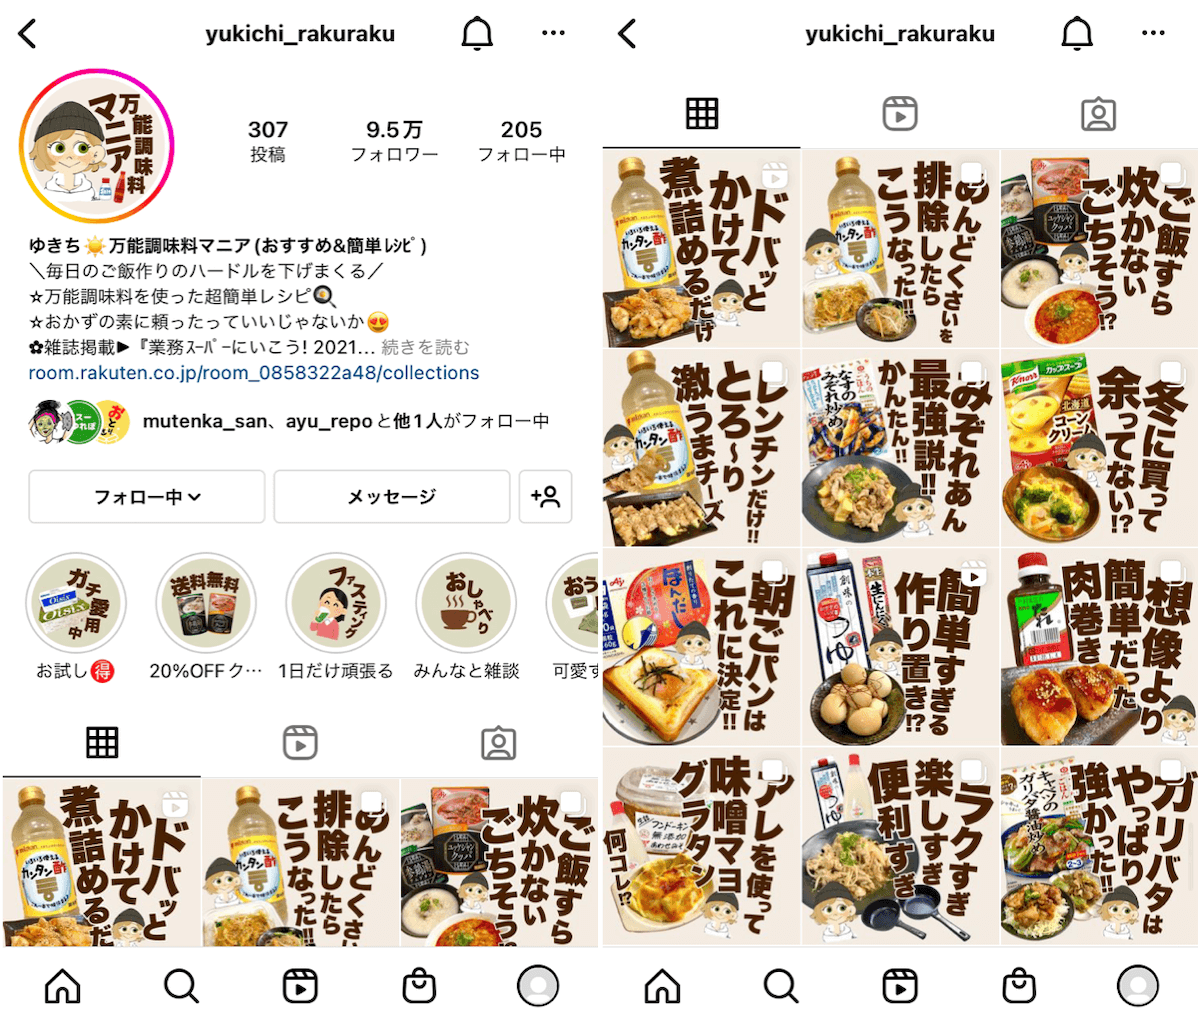 instagram-syokuhin-yukichi_rakuraku